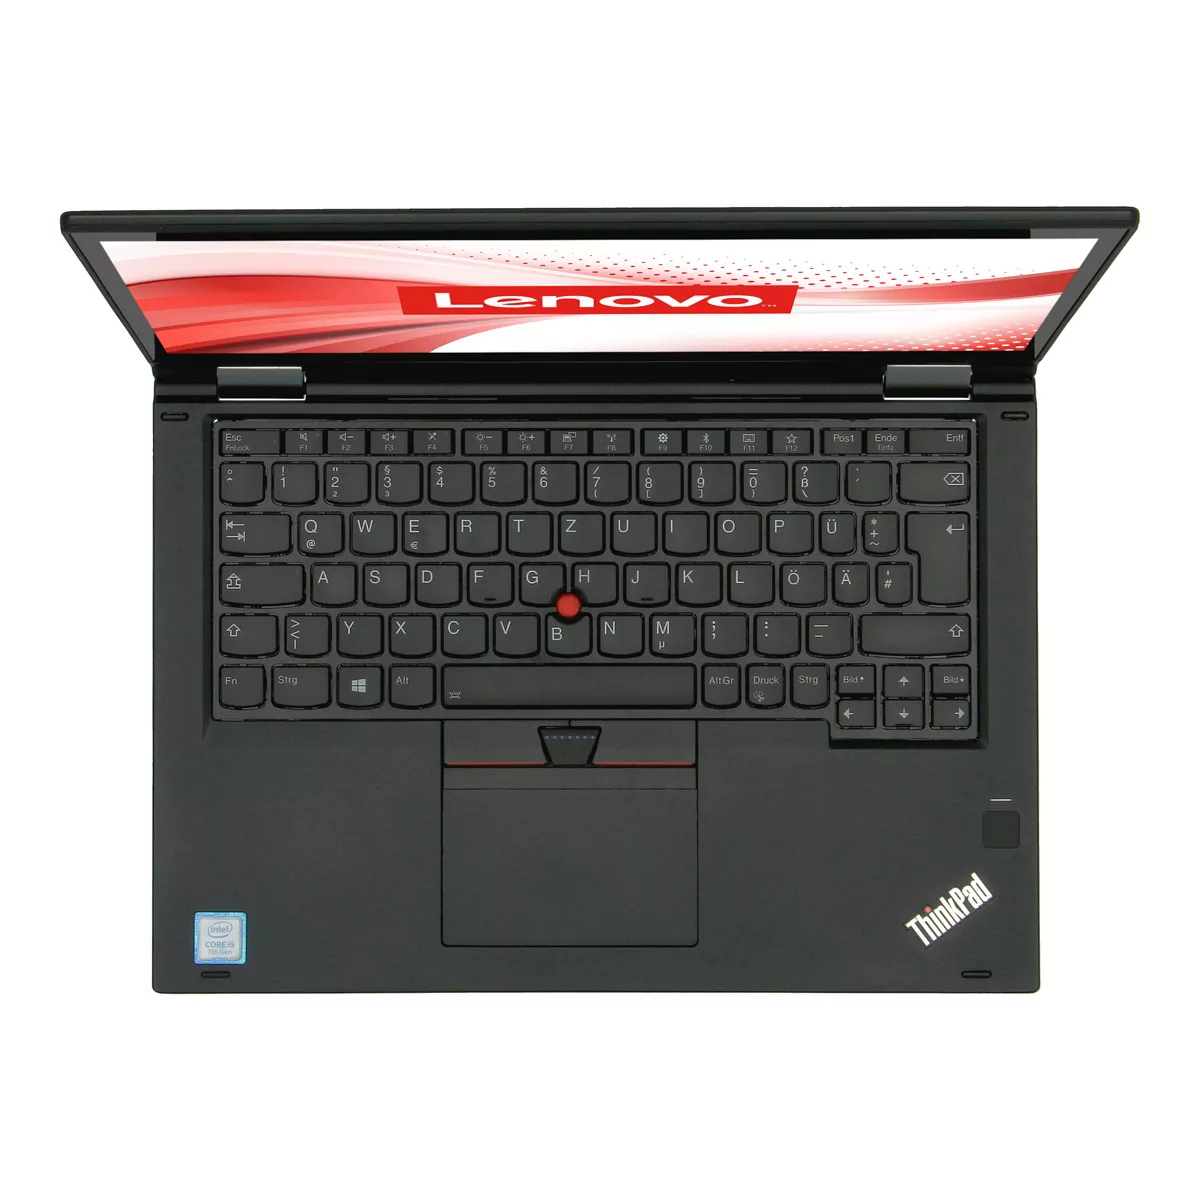 Lenovo ThinkPad X380 Yoga Core i5 8250U Touch 8 GB DDR4 240 GB M.2 SSD Webcam A